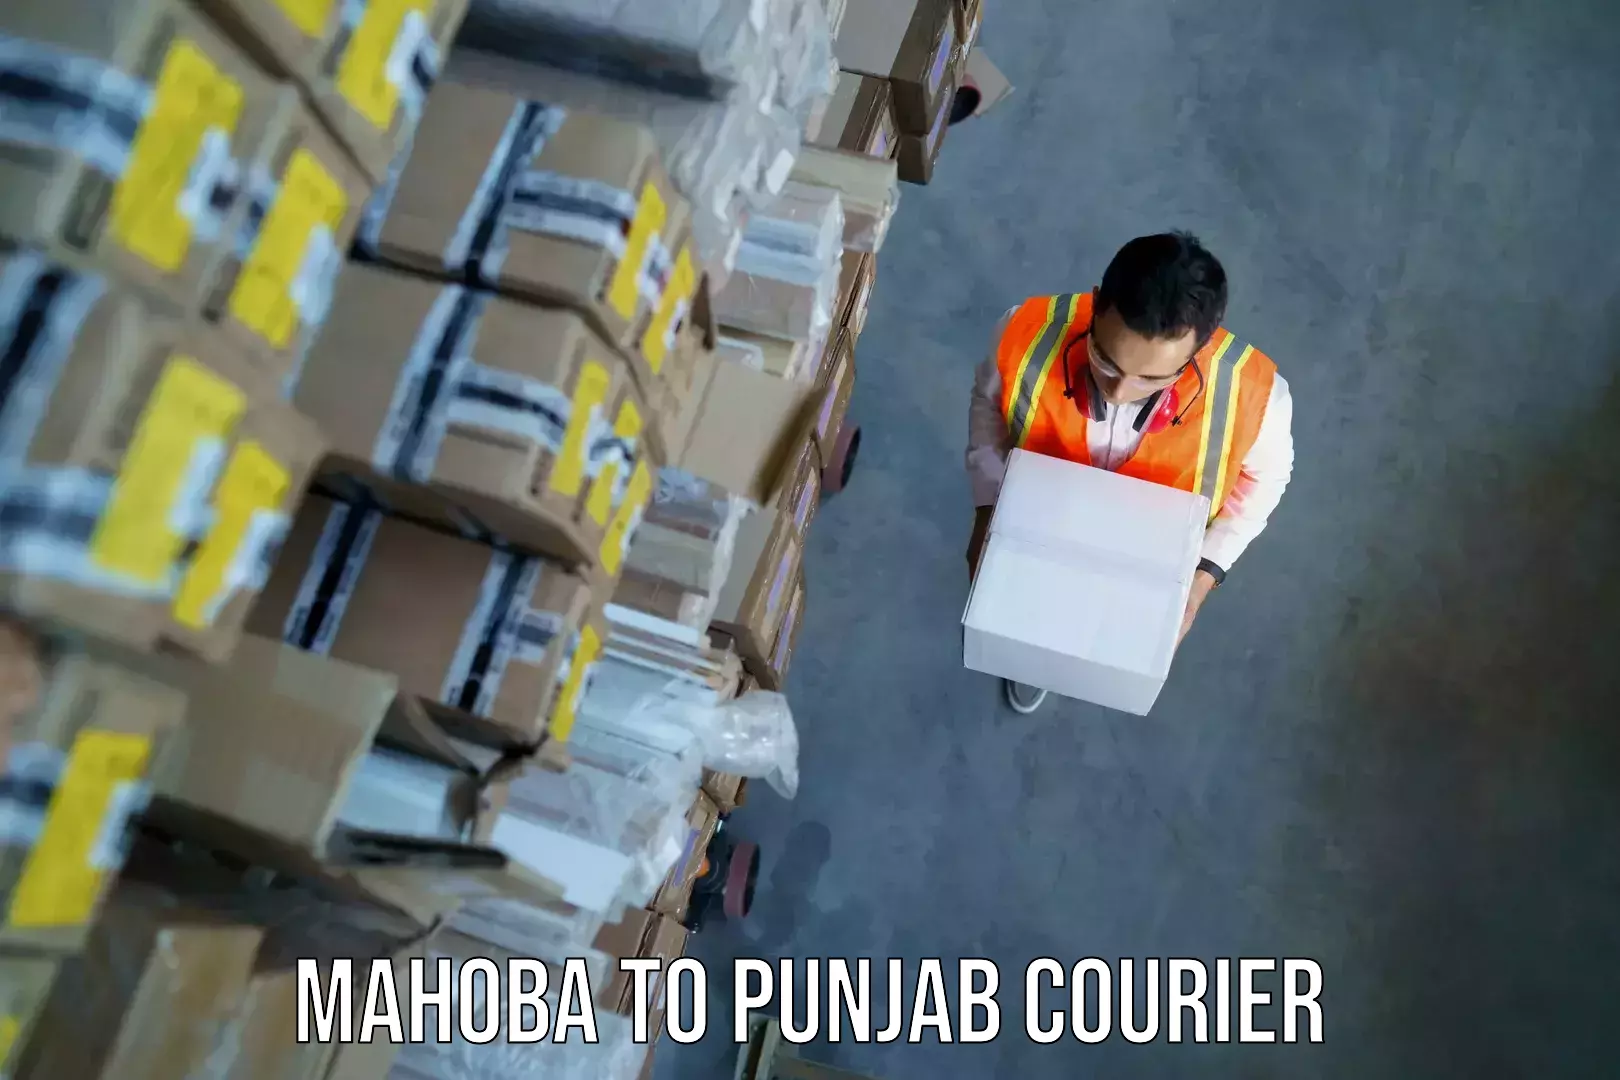 Door-to-door baggage service Mahoba to Punjab